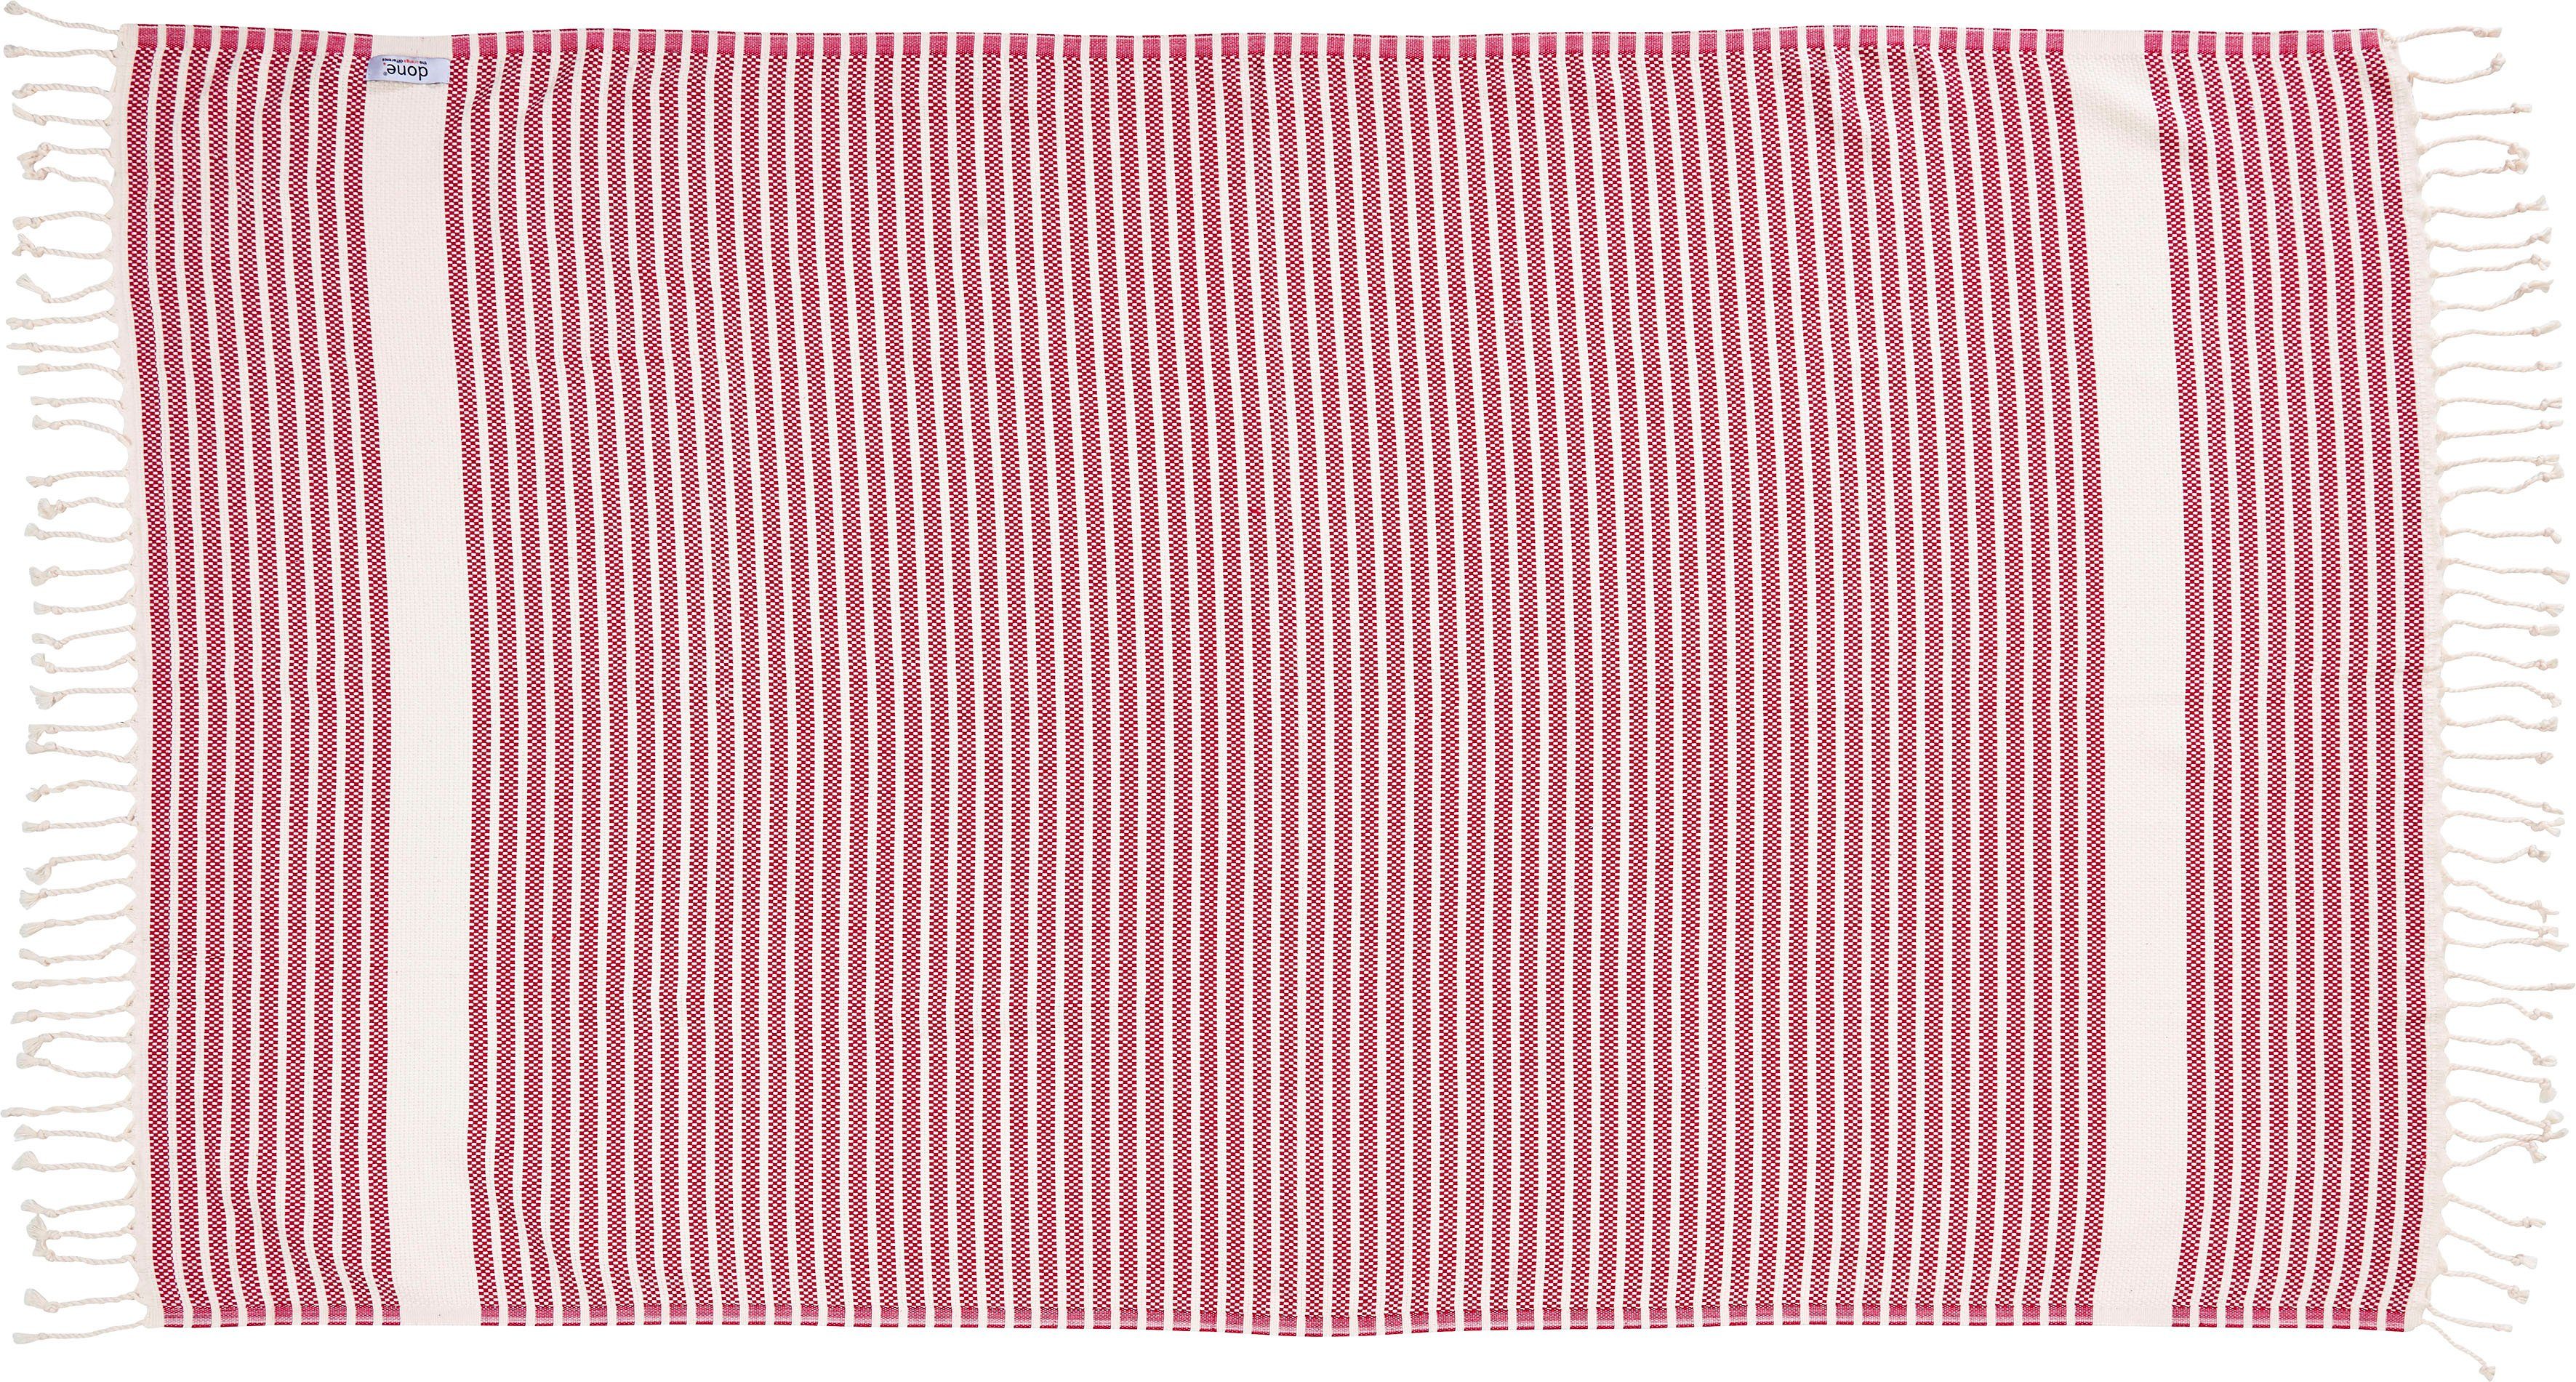 Fransen geknoteten Leichtes mit Lounge Plaid Plaid pink/beige Stripes, done.®,